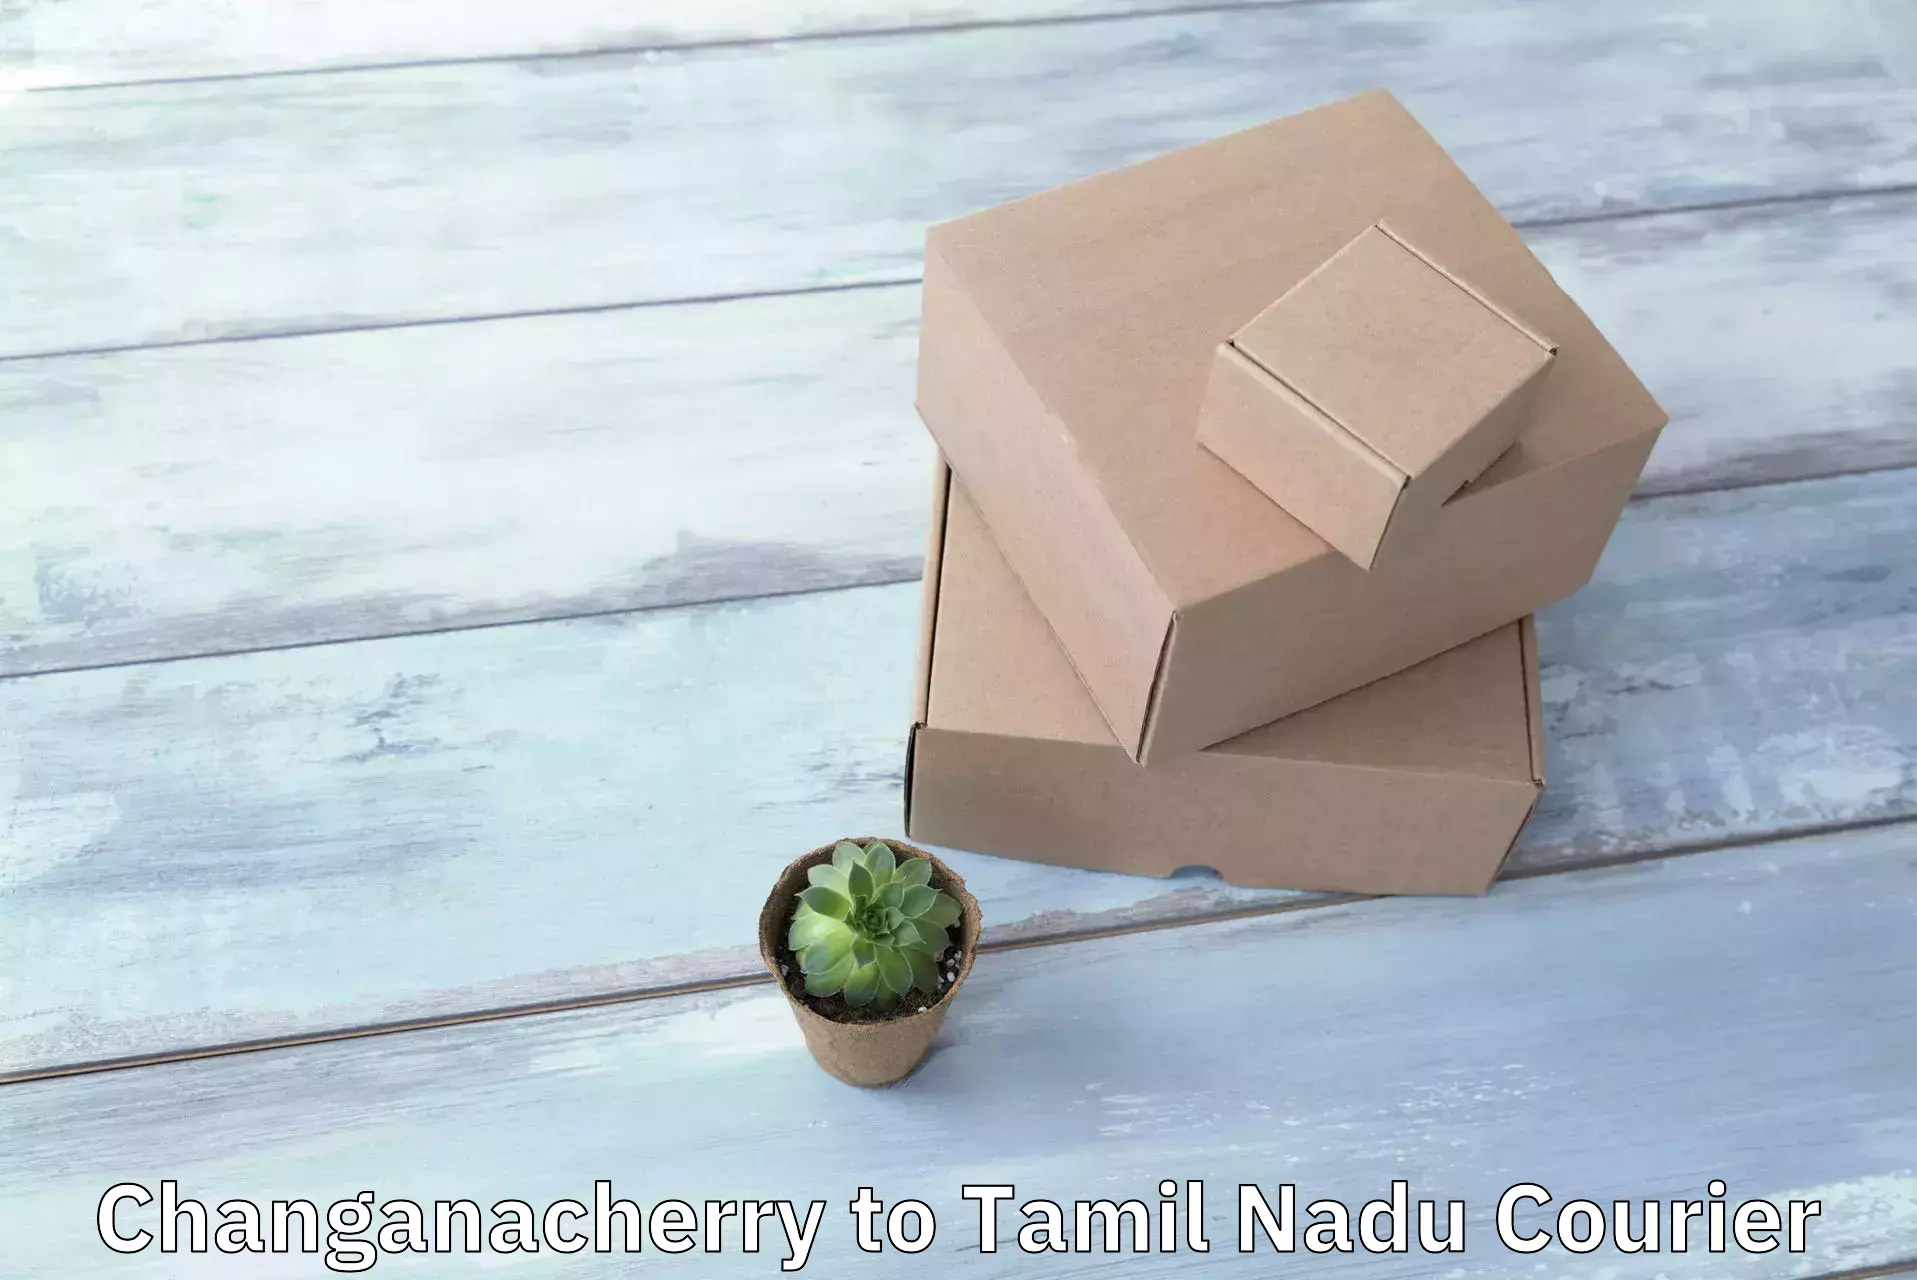 Reliable package handling Changanacherry to Tiruchi